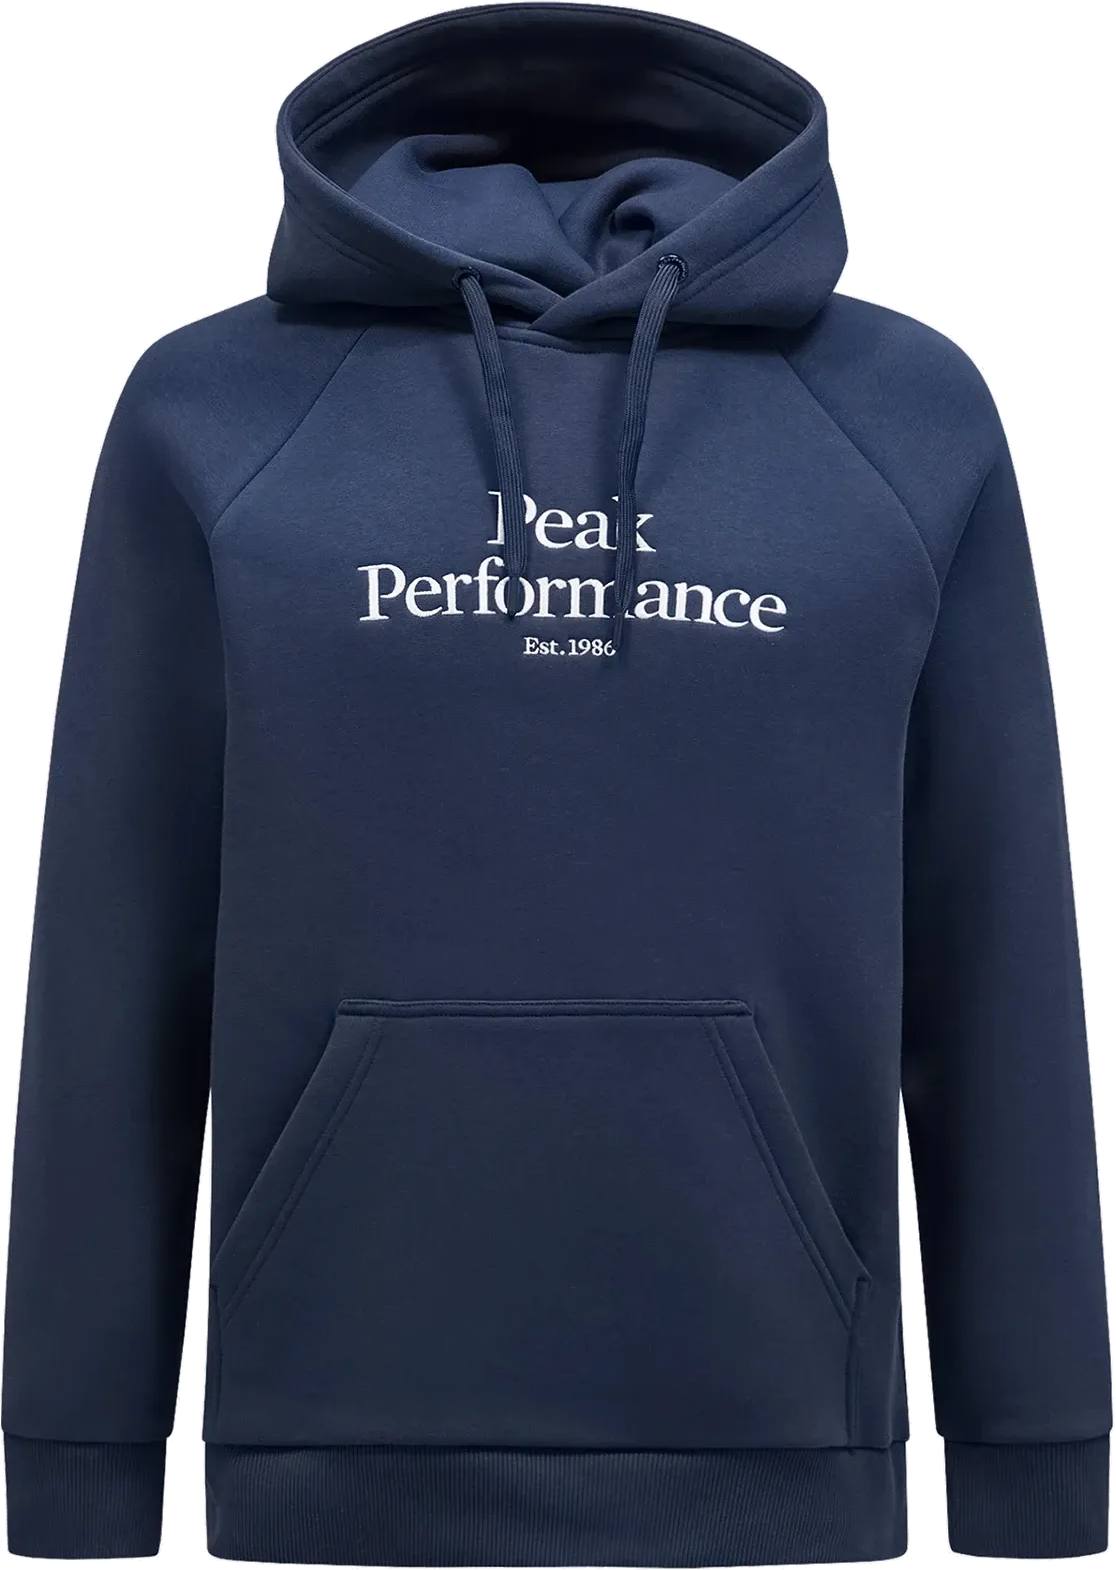 Peak Performance Men’s Original Hood